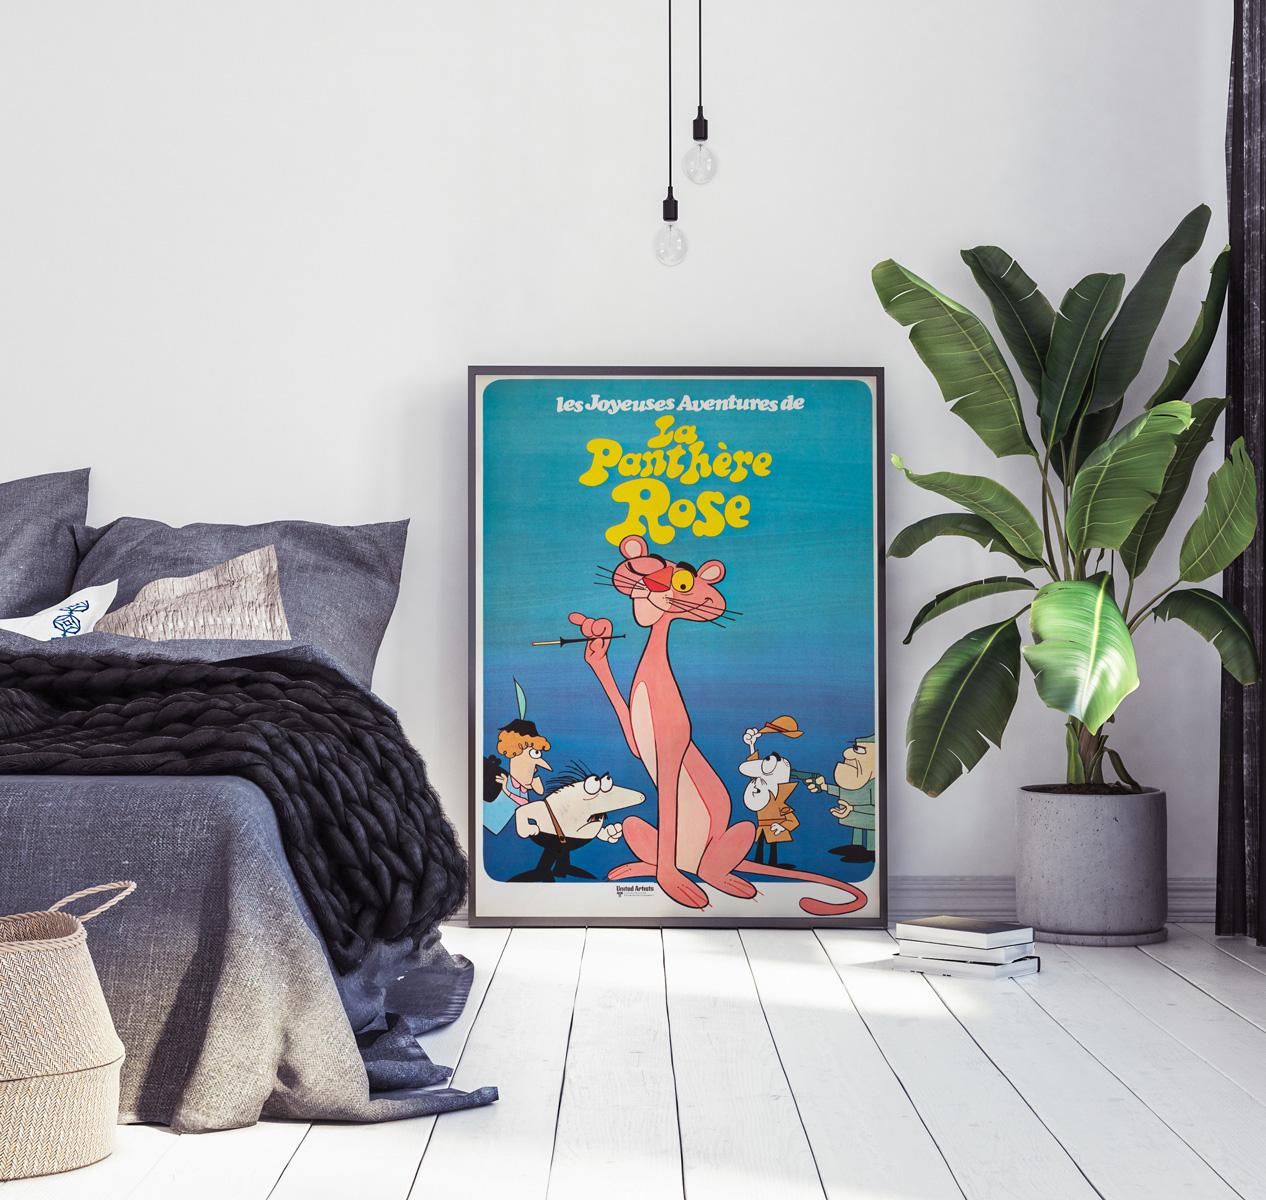 Wir lieben dieses originale französische Filmplakat aus dem Jahr 1970 für eine Kinostaffel der Zeichentrickserie The Pink Panther in Frankreich.

Dieses Vintage-Poster wurde professionell mit Leinenrücken versehen und misst 23 x 31 Zoll (25 1/4 x 33